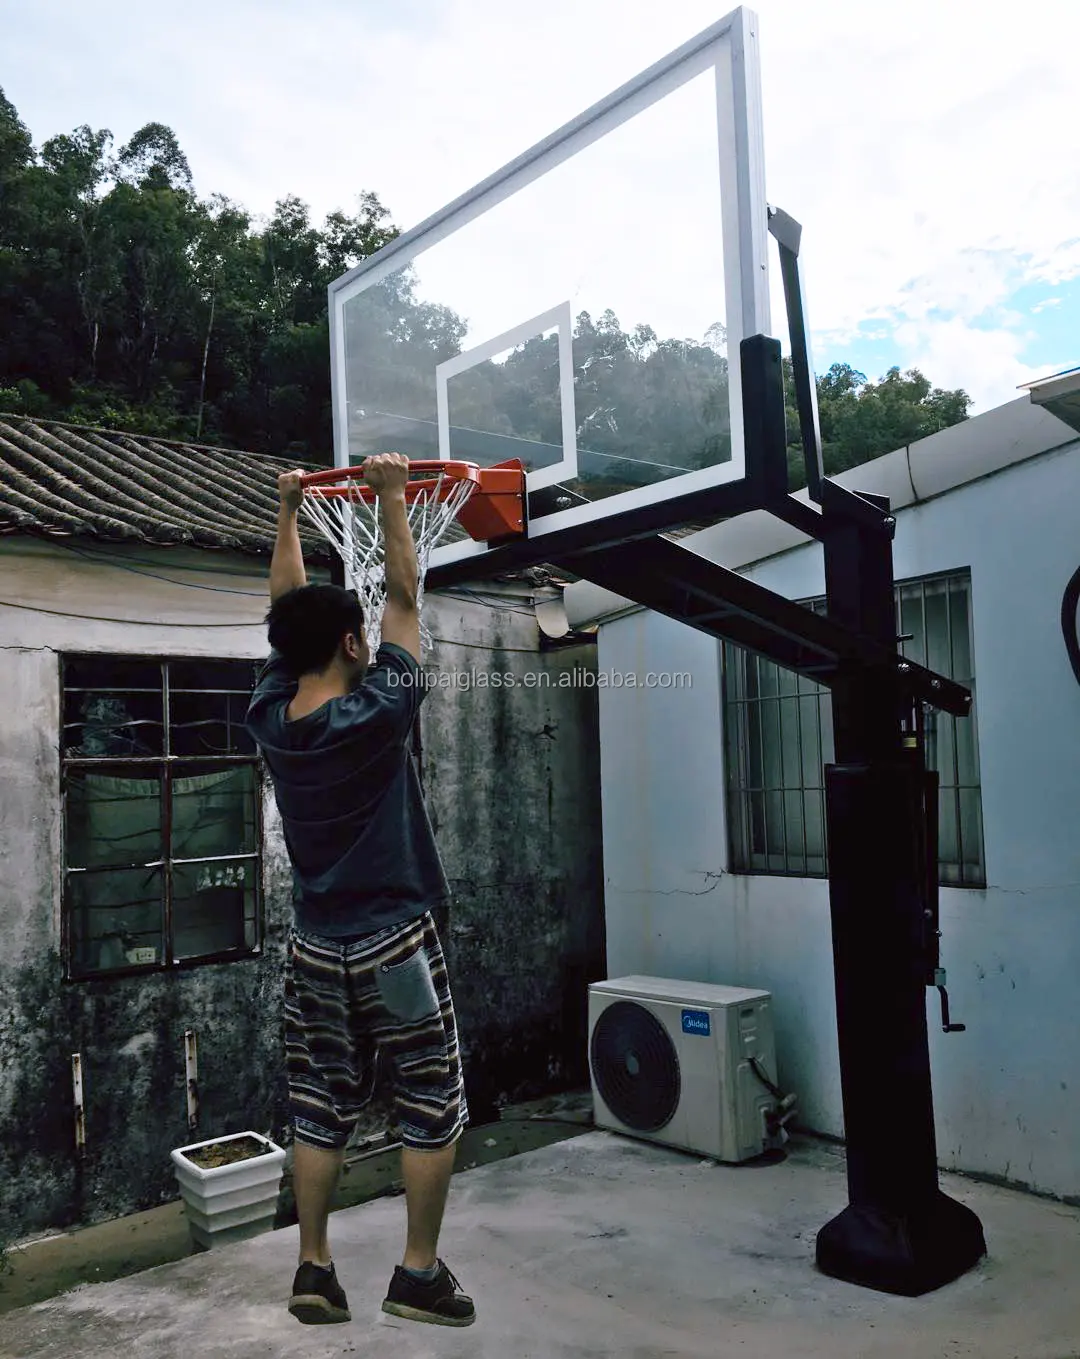 Zemin sepet top standı pole basketbol potası kutup dolgu ile özel ayarlanabilir